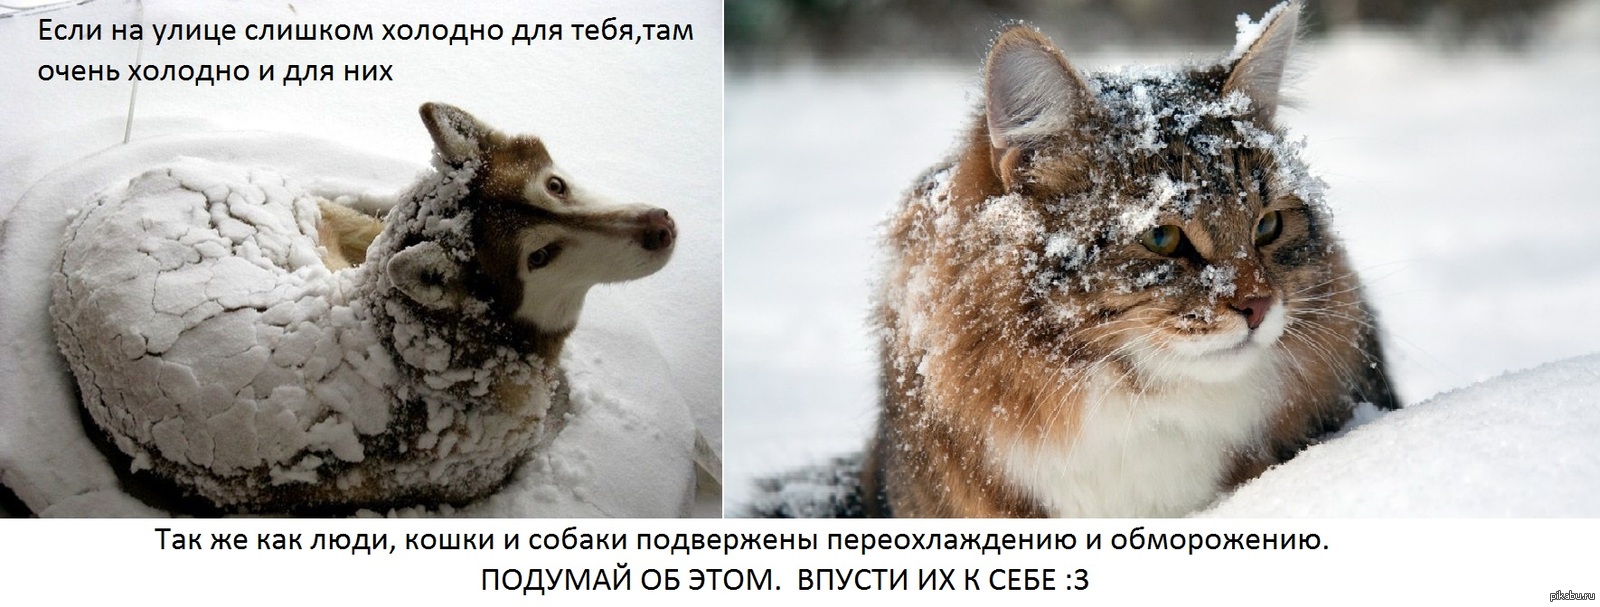 Не сильный но холодный. Бездомные животные зима. Замерзающие бездомные животные. Помогайте бездомным животным в Морозы. Бездомные животные мерзнут.